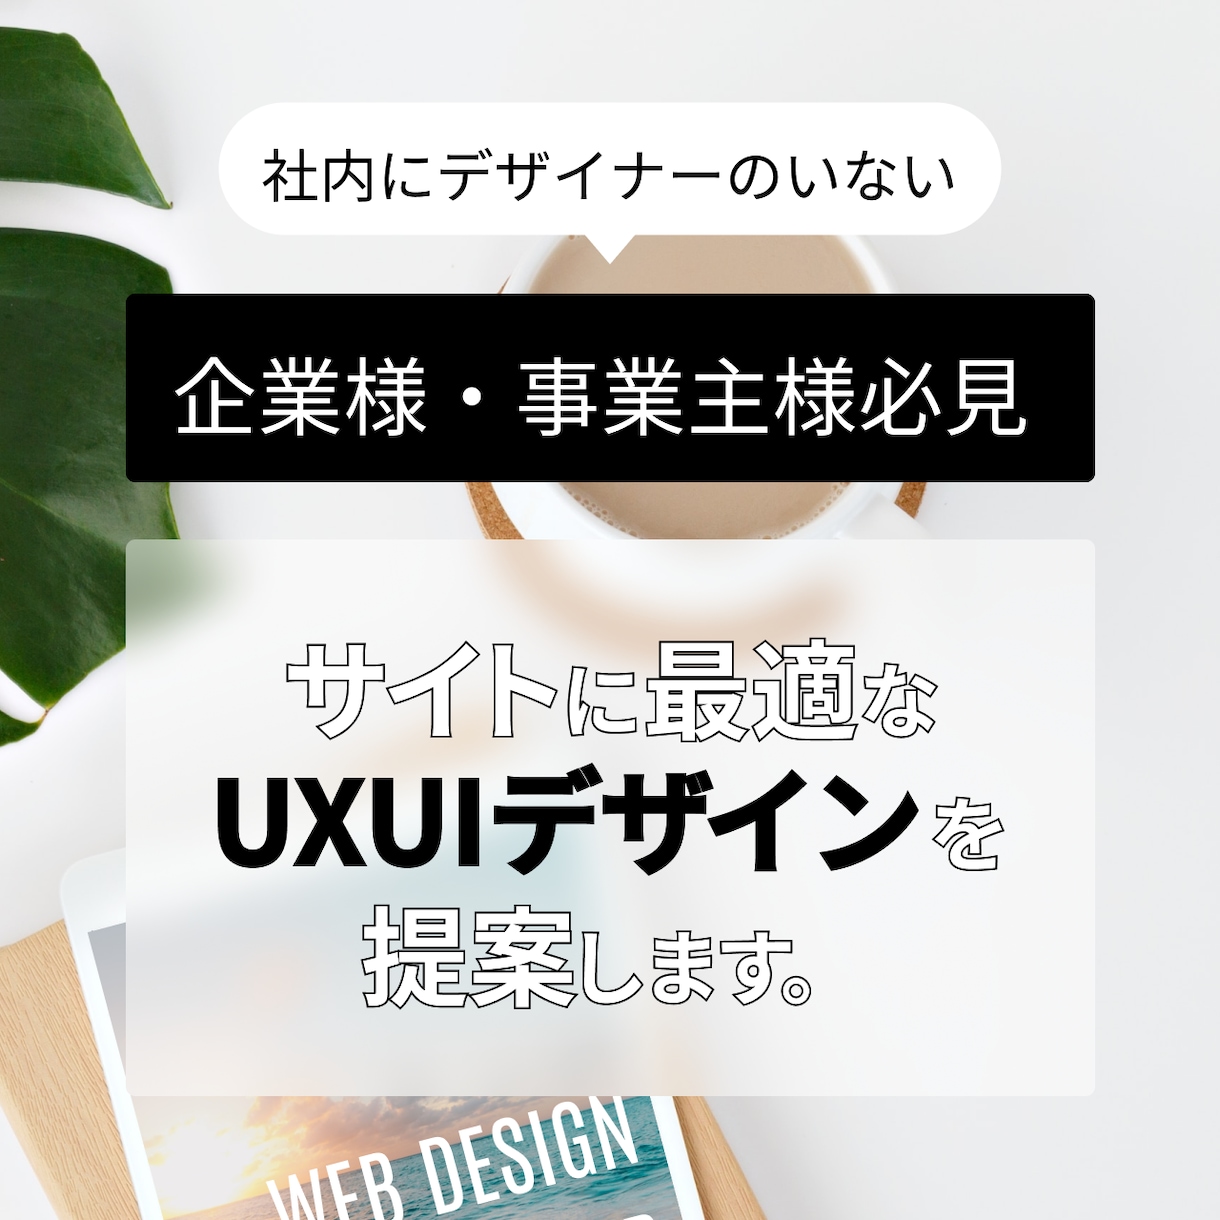 企業事業主様！必見サイトのUXUIデザインします 社内デザイナーがいない企業様、デザインをお手伝いします イメージ1